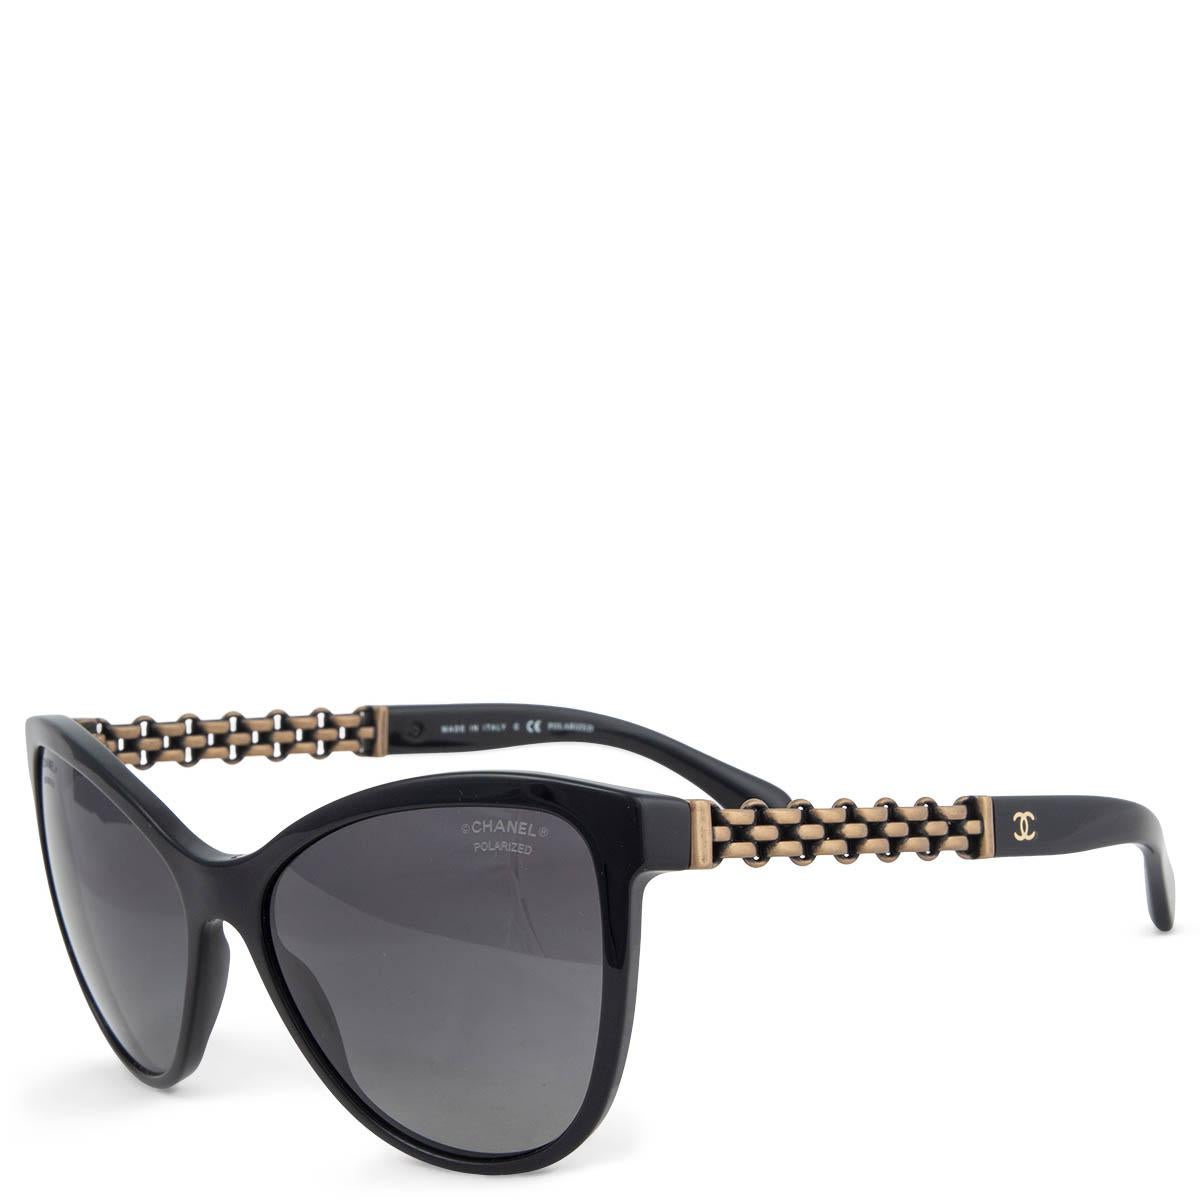 100% authentische Chanel C501/S8 Cat-Eye-Sonnenbrille aus schwarzem Acetat mit grauen Verlaufsgläsern und antiken goldfarbenen Kettendetails an den Bügeln. Sie wurden getragen und sind in ausgezeichnetem Zustand. 

Messungen
Modell	C501/S8